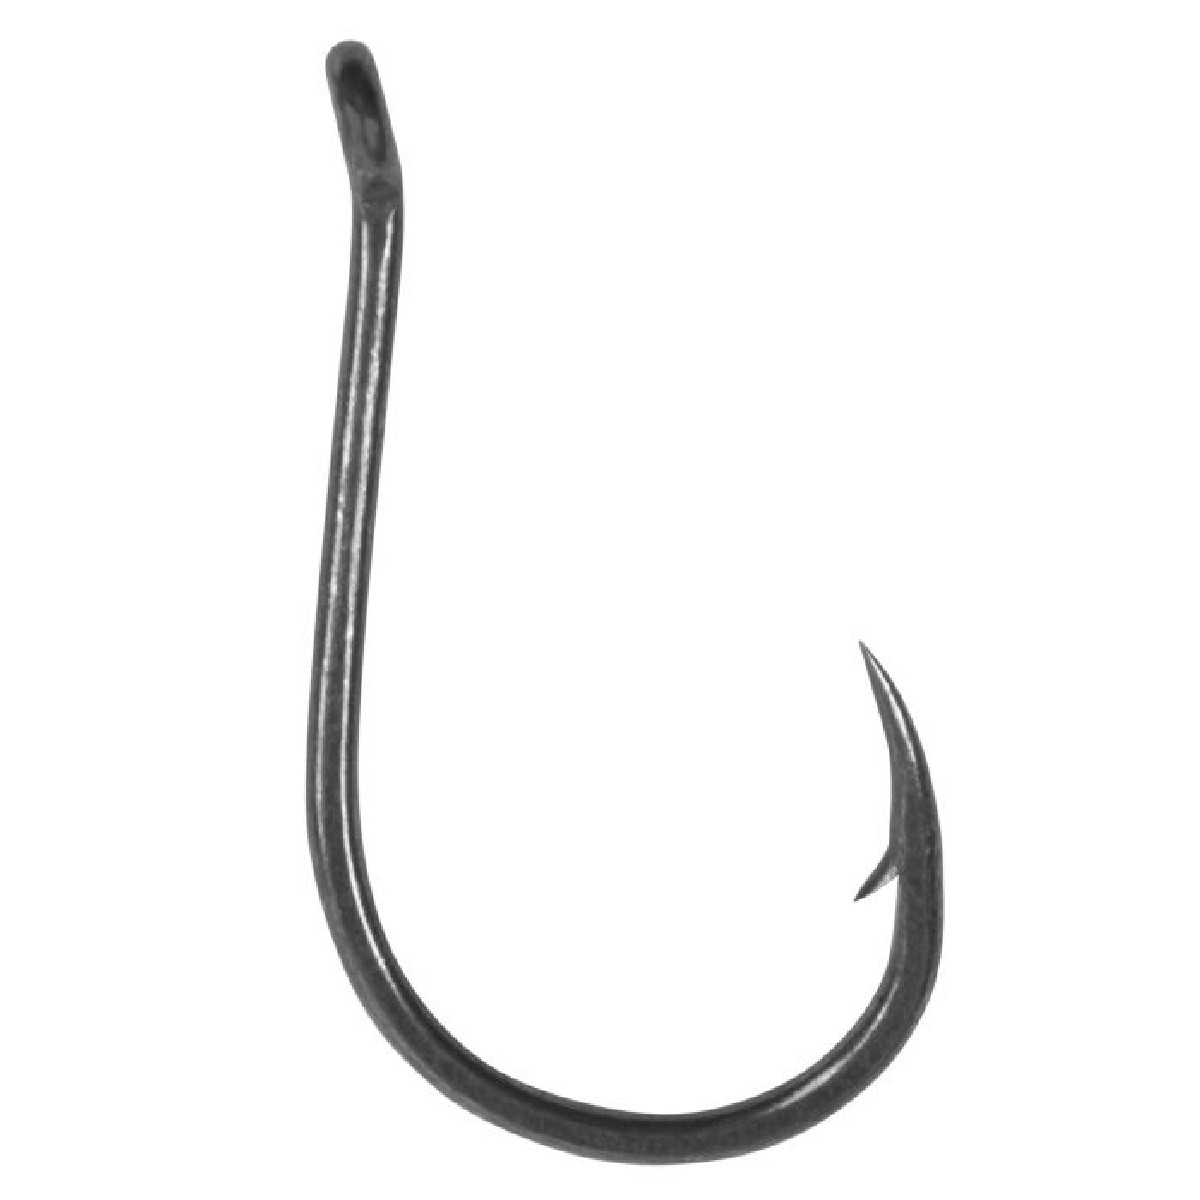 Korum Allrounder Hook Barbed 10st. Size 8